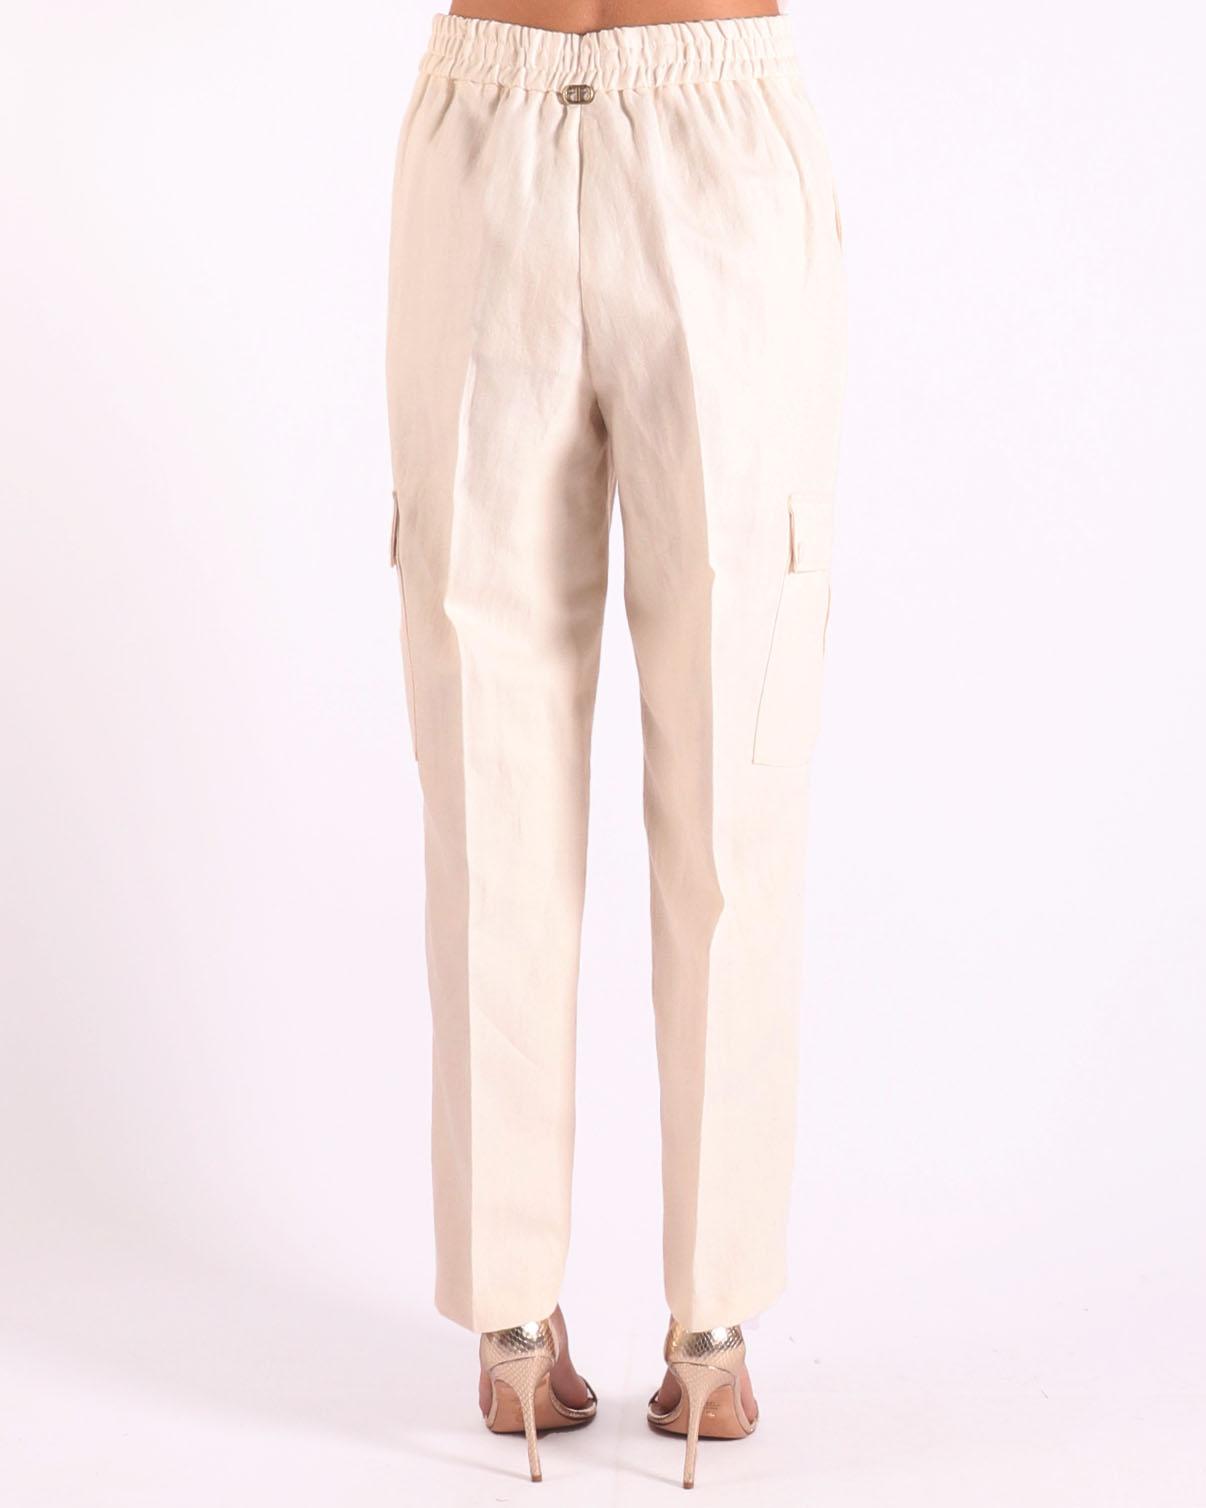 Twinset broek in de kleur wit